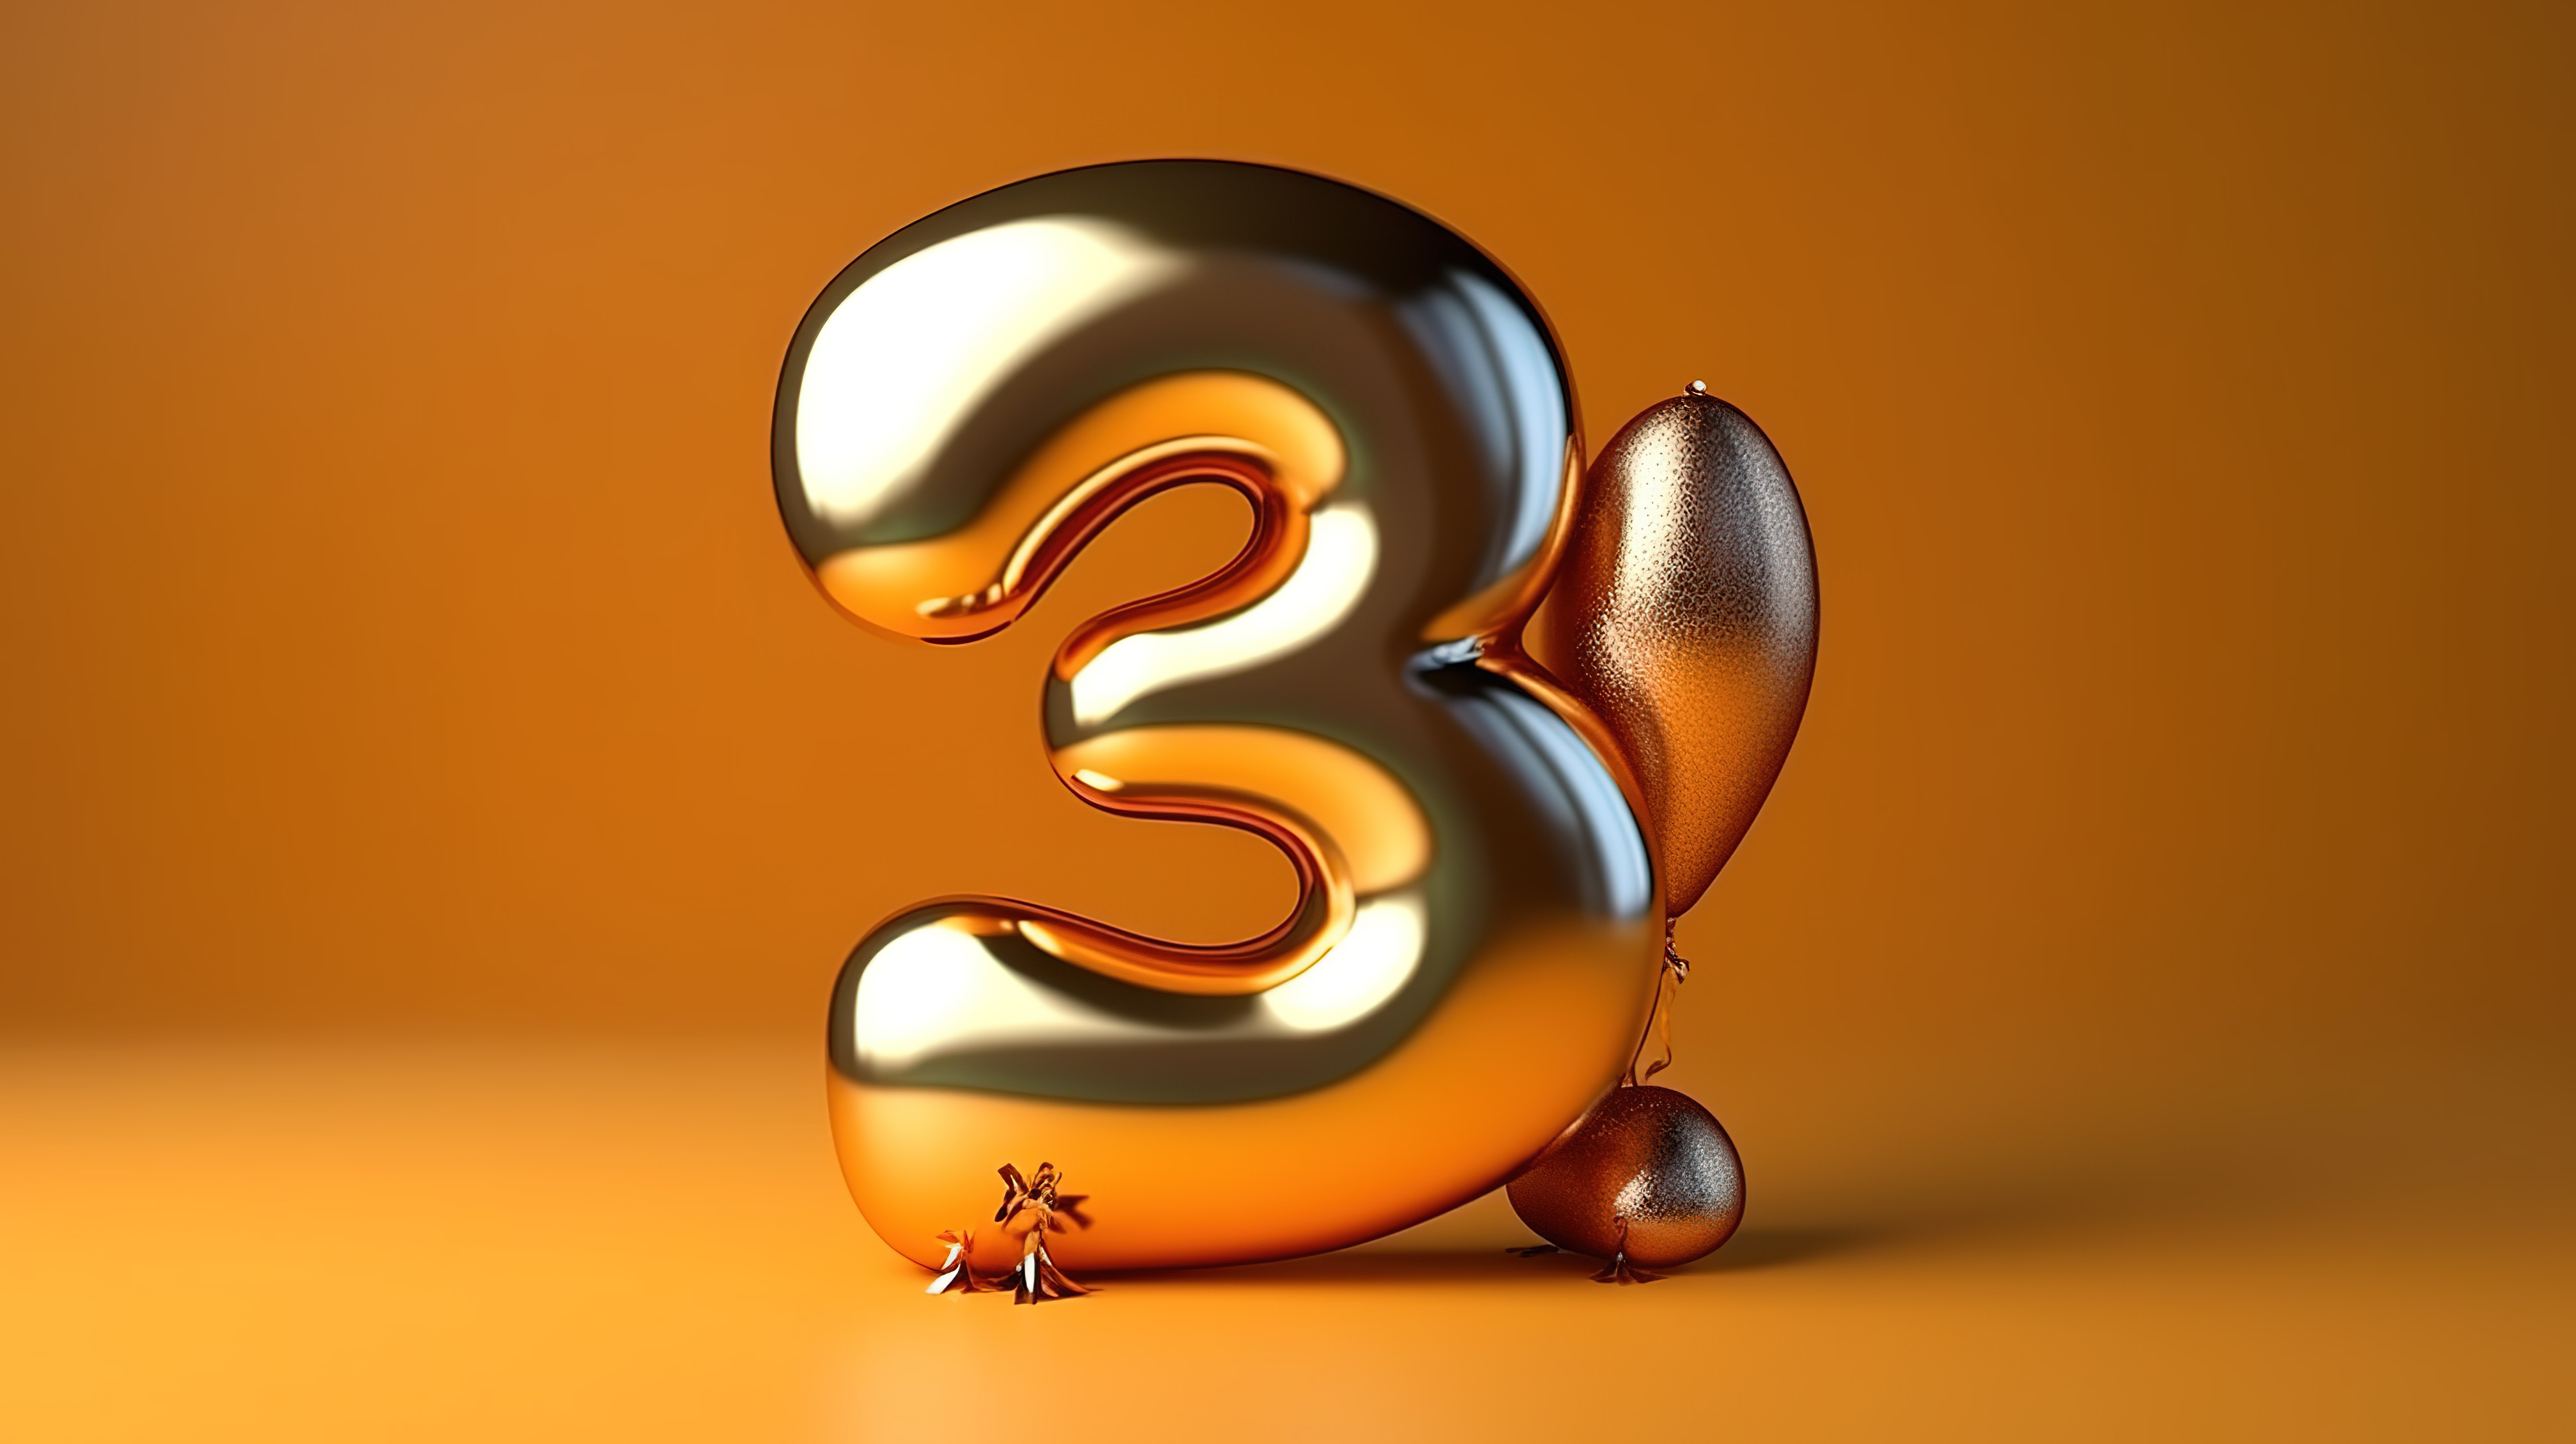 欢乐的 3 周年庆典与金色气球图形 3d 概念图片